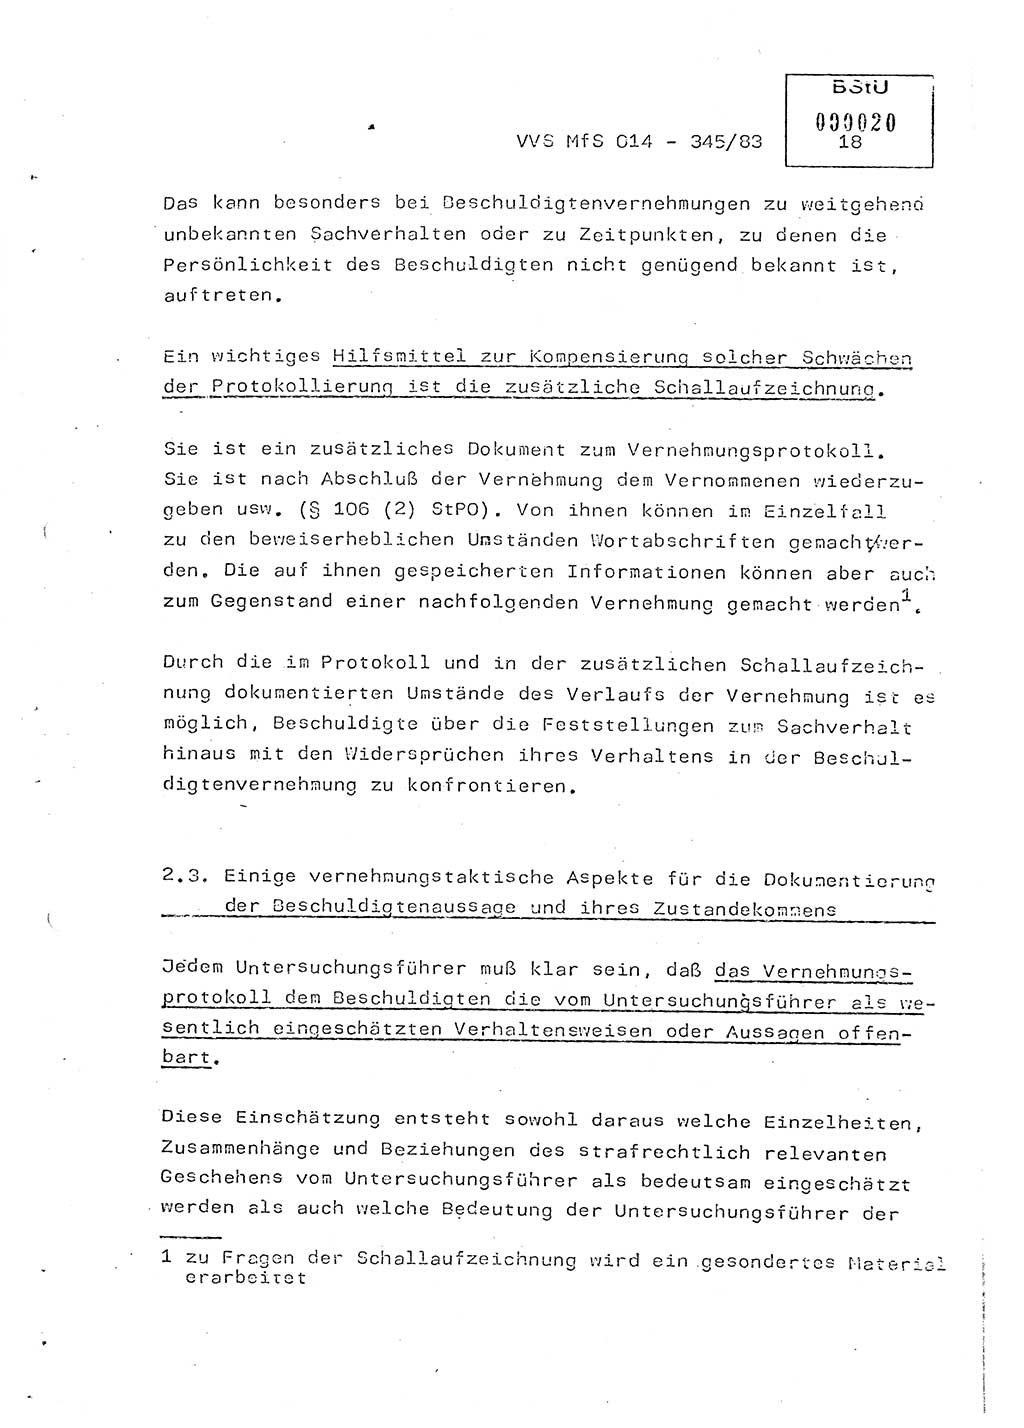 Lektion Ministerium für Staatssicherheit (MfS) [Deutsche Demokratische Republik (DDR)], Hauptabteilung (HA) Ⅸ, Vertrauliche Verschlußsache (VVS) o014-345/83, Berlin 1983, Seite 18 (Lekt. MfS DDR HA Ⅸ VVS o014-345/83 1983, S. 18)